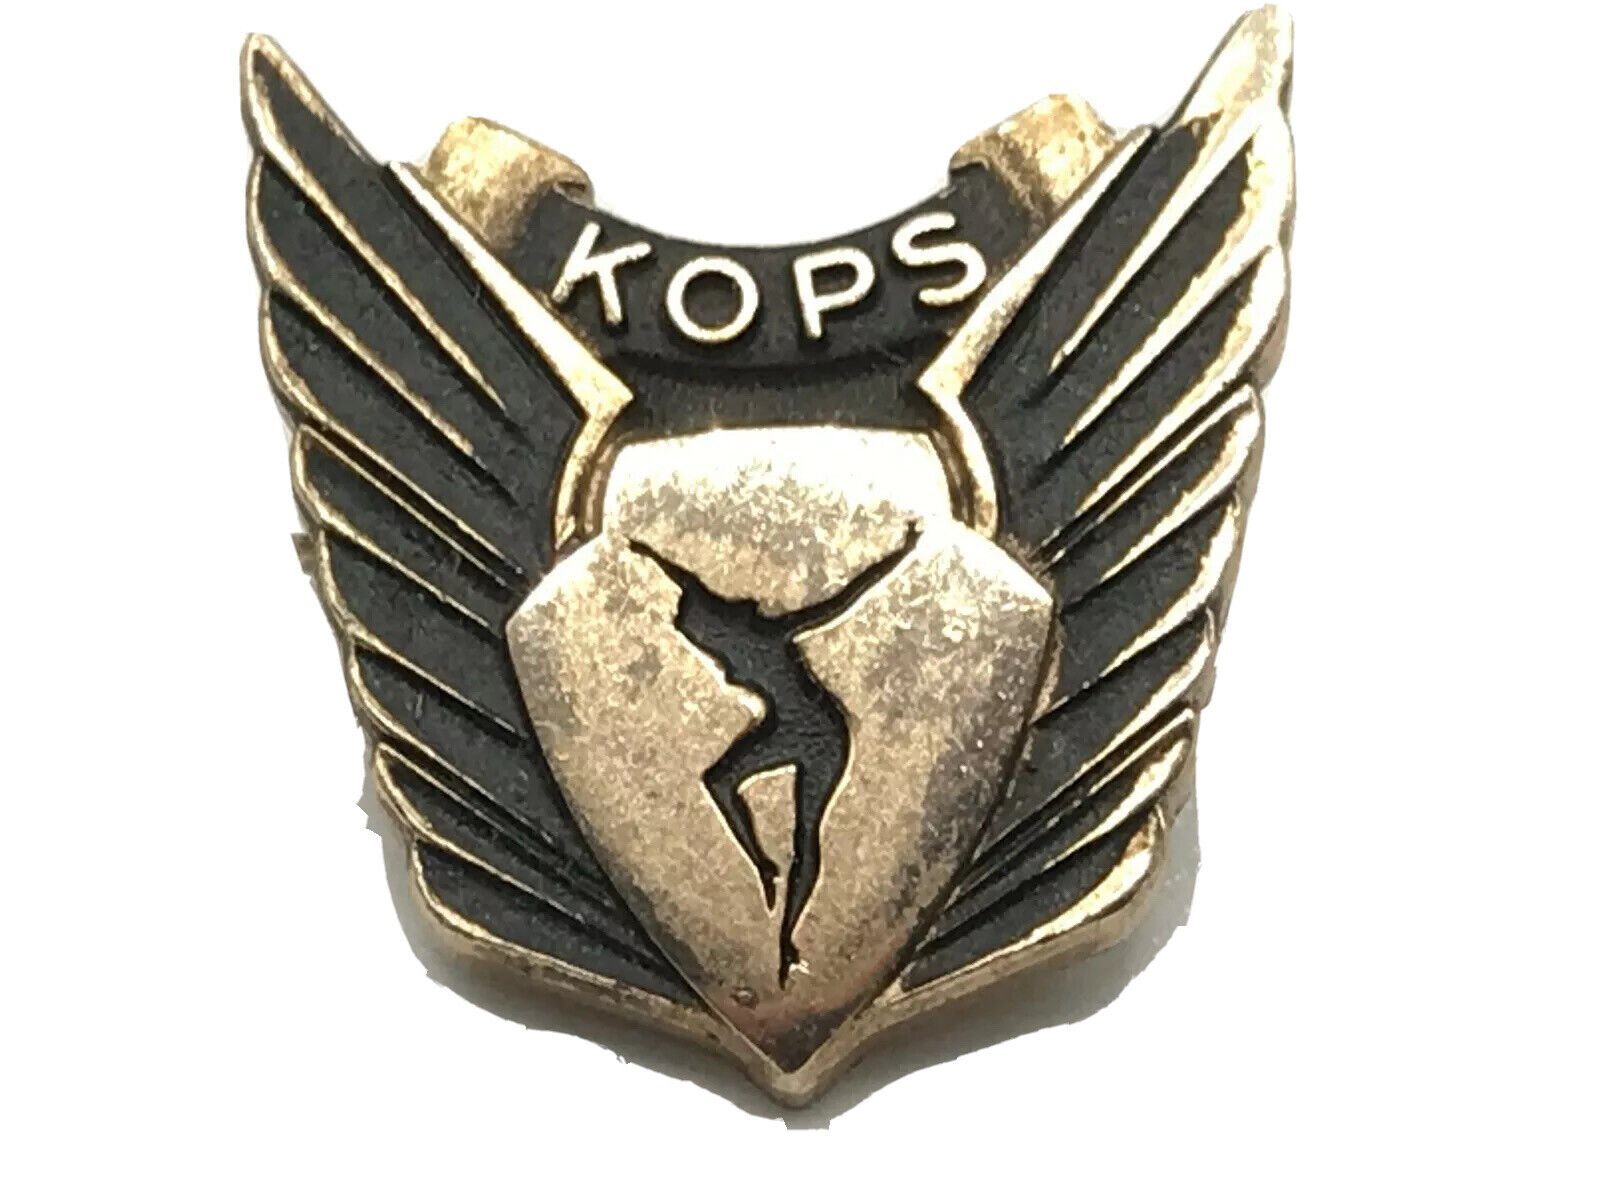 KOPS Weight Loss Lapel Pin Wings Vintage Small Advertising Cool Logo Award Pin